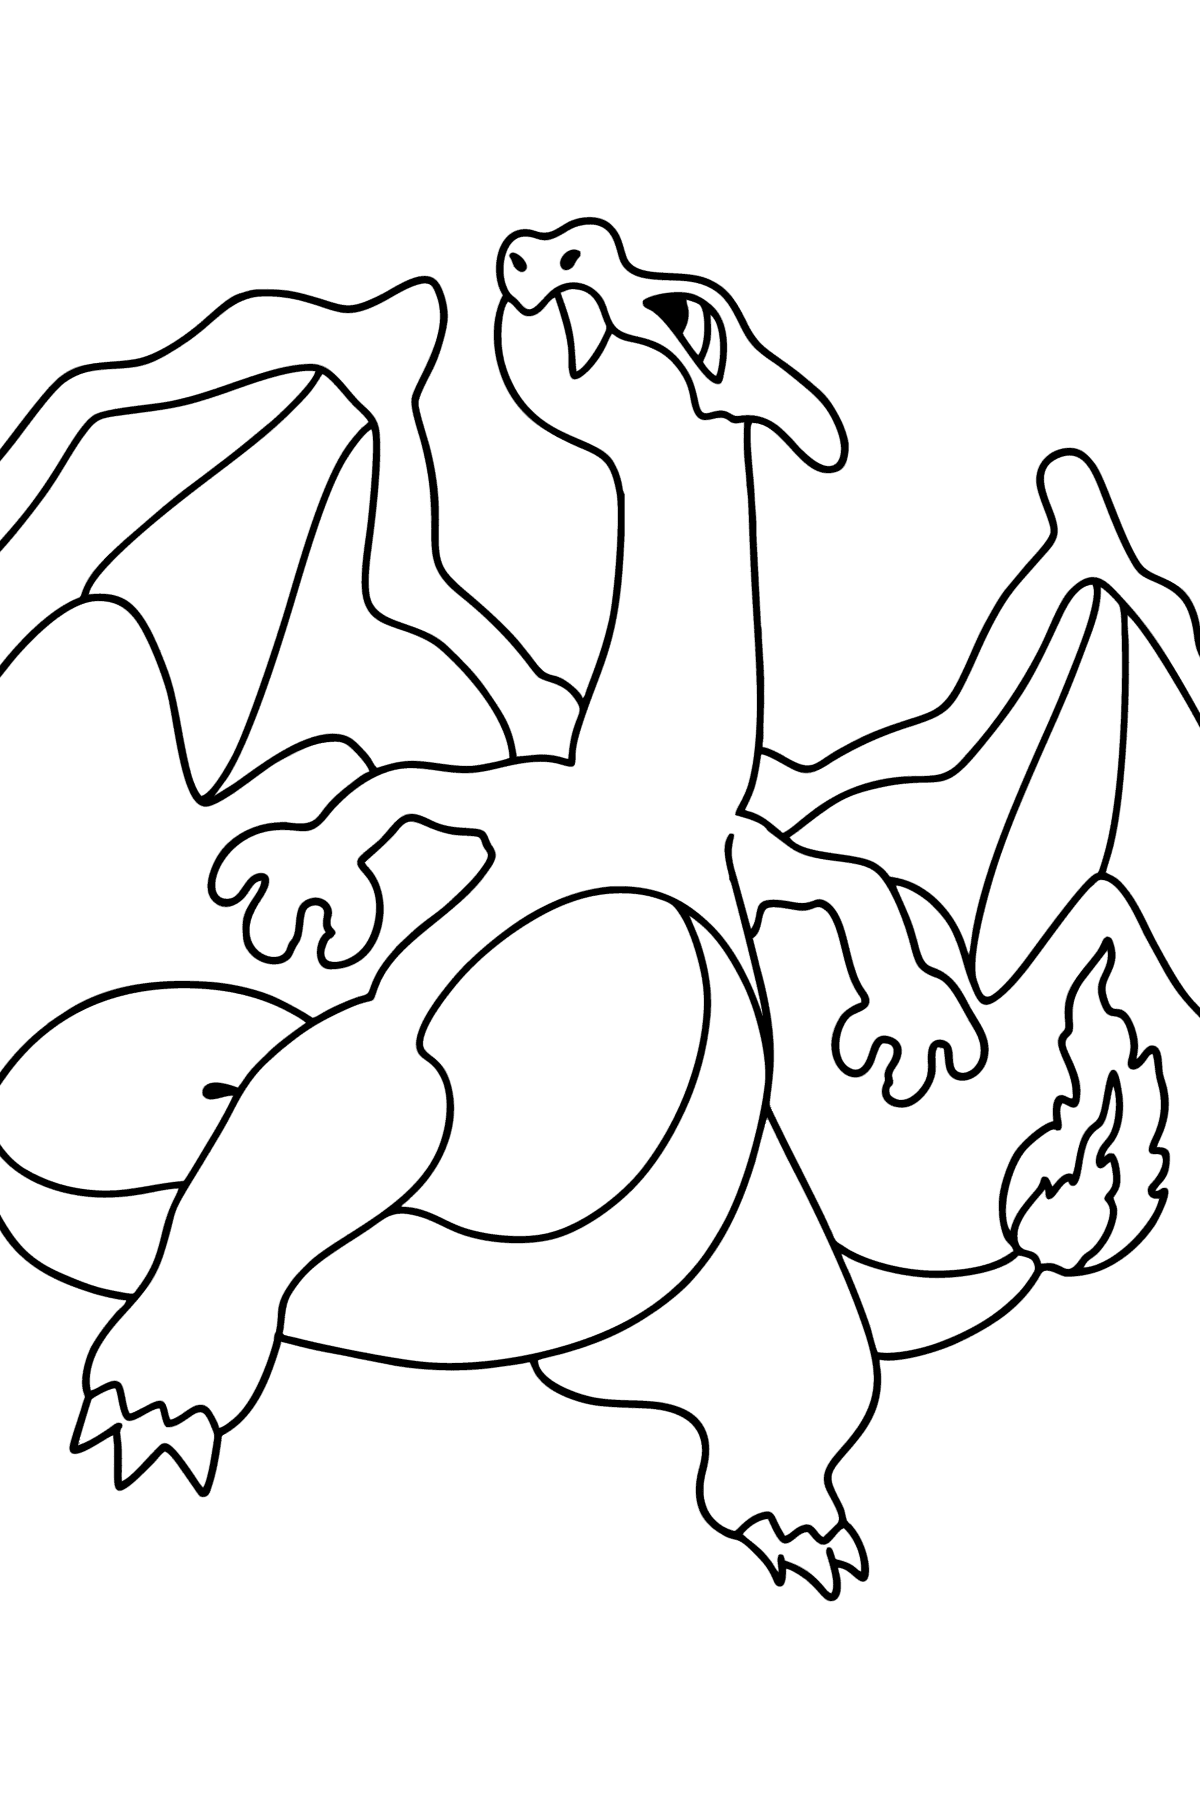 Värityskuva Pokémon Go Charizard - Värityskuvat lapsille